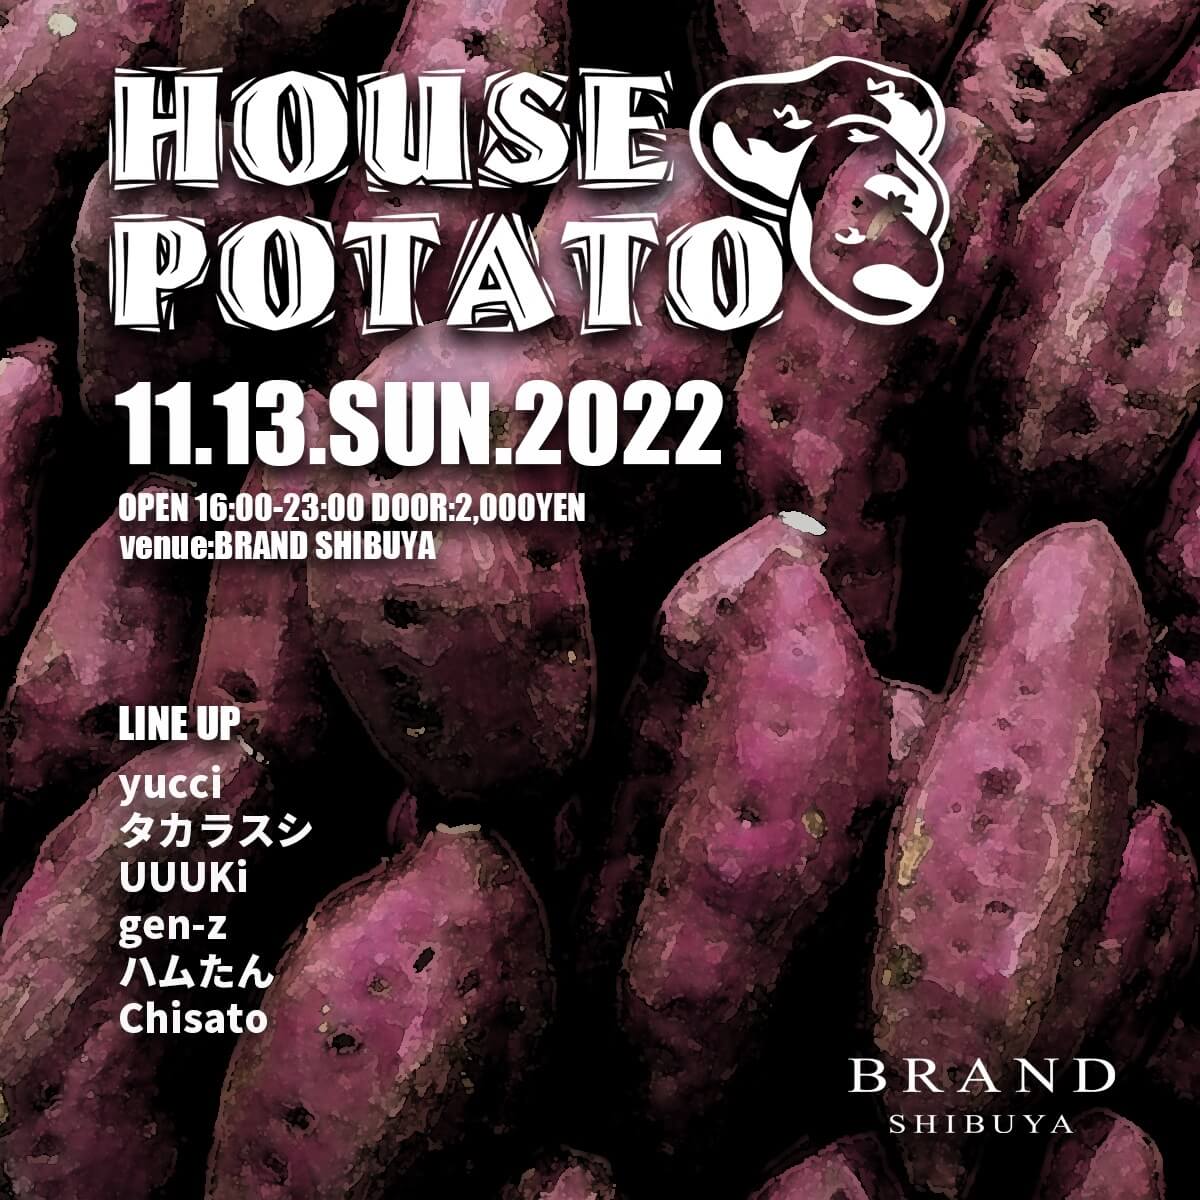 HOUSE POTATO 2022年11月13日（日曜日）に渋谷 クラブのBRAND SHIBUYAで開催されるHOUSEイベント